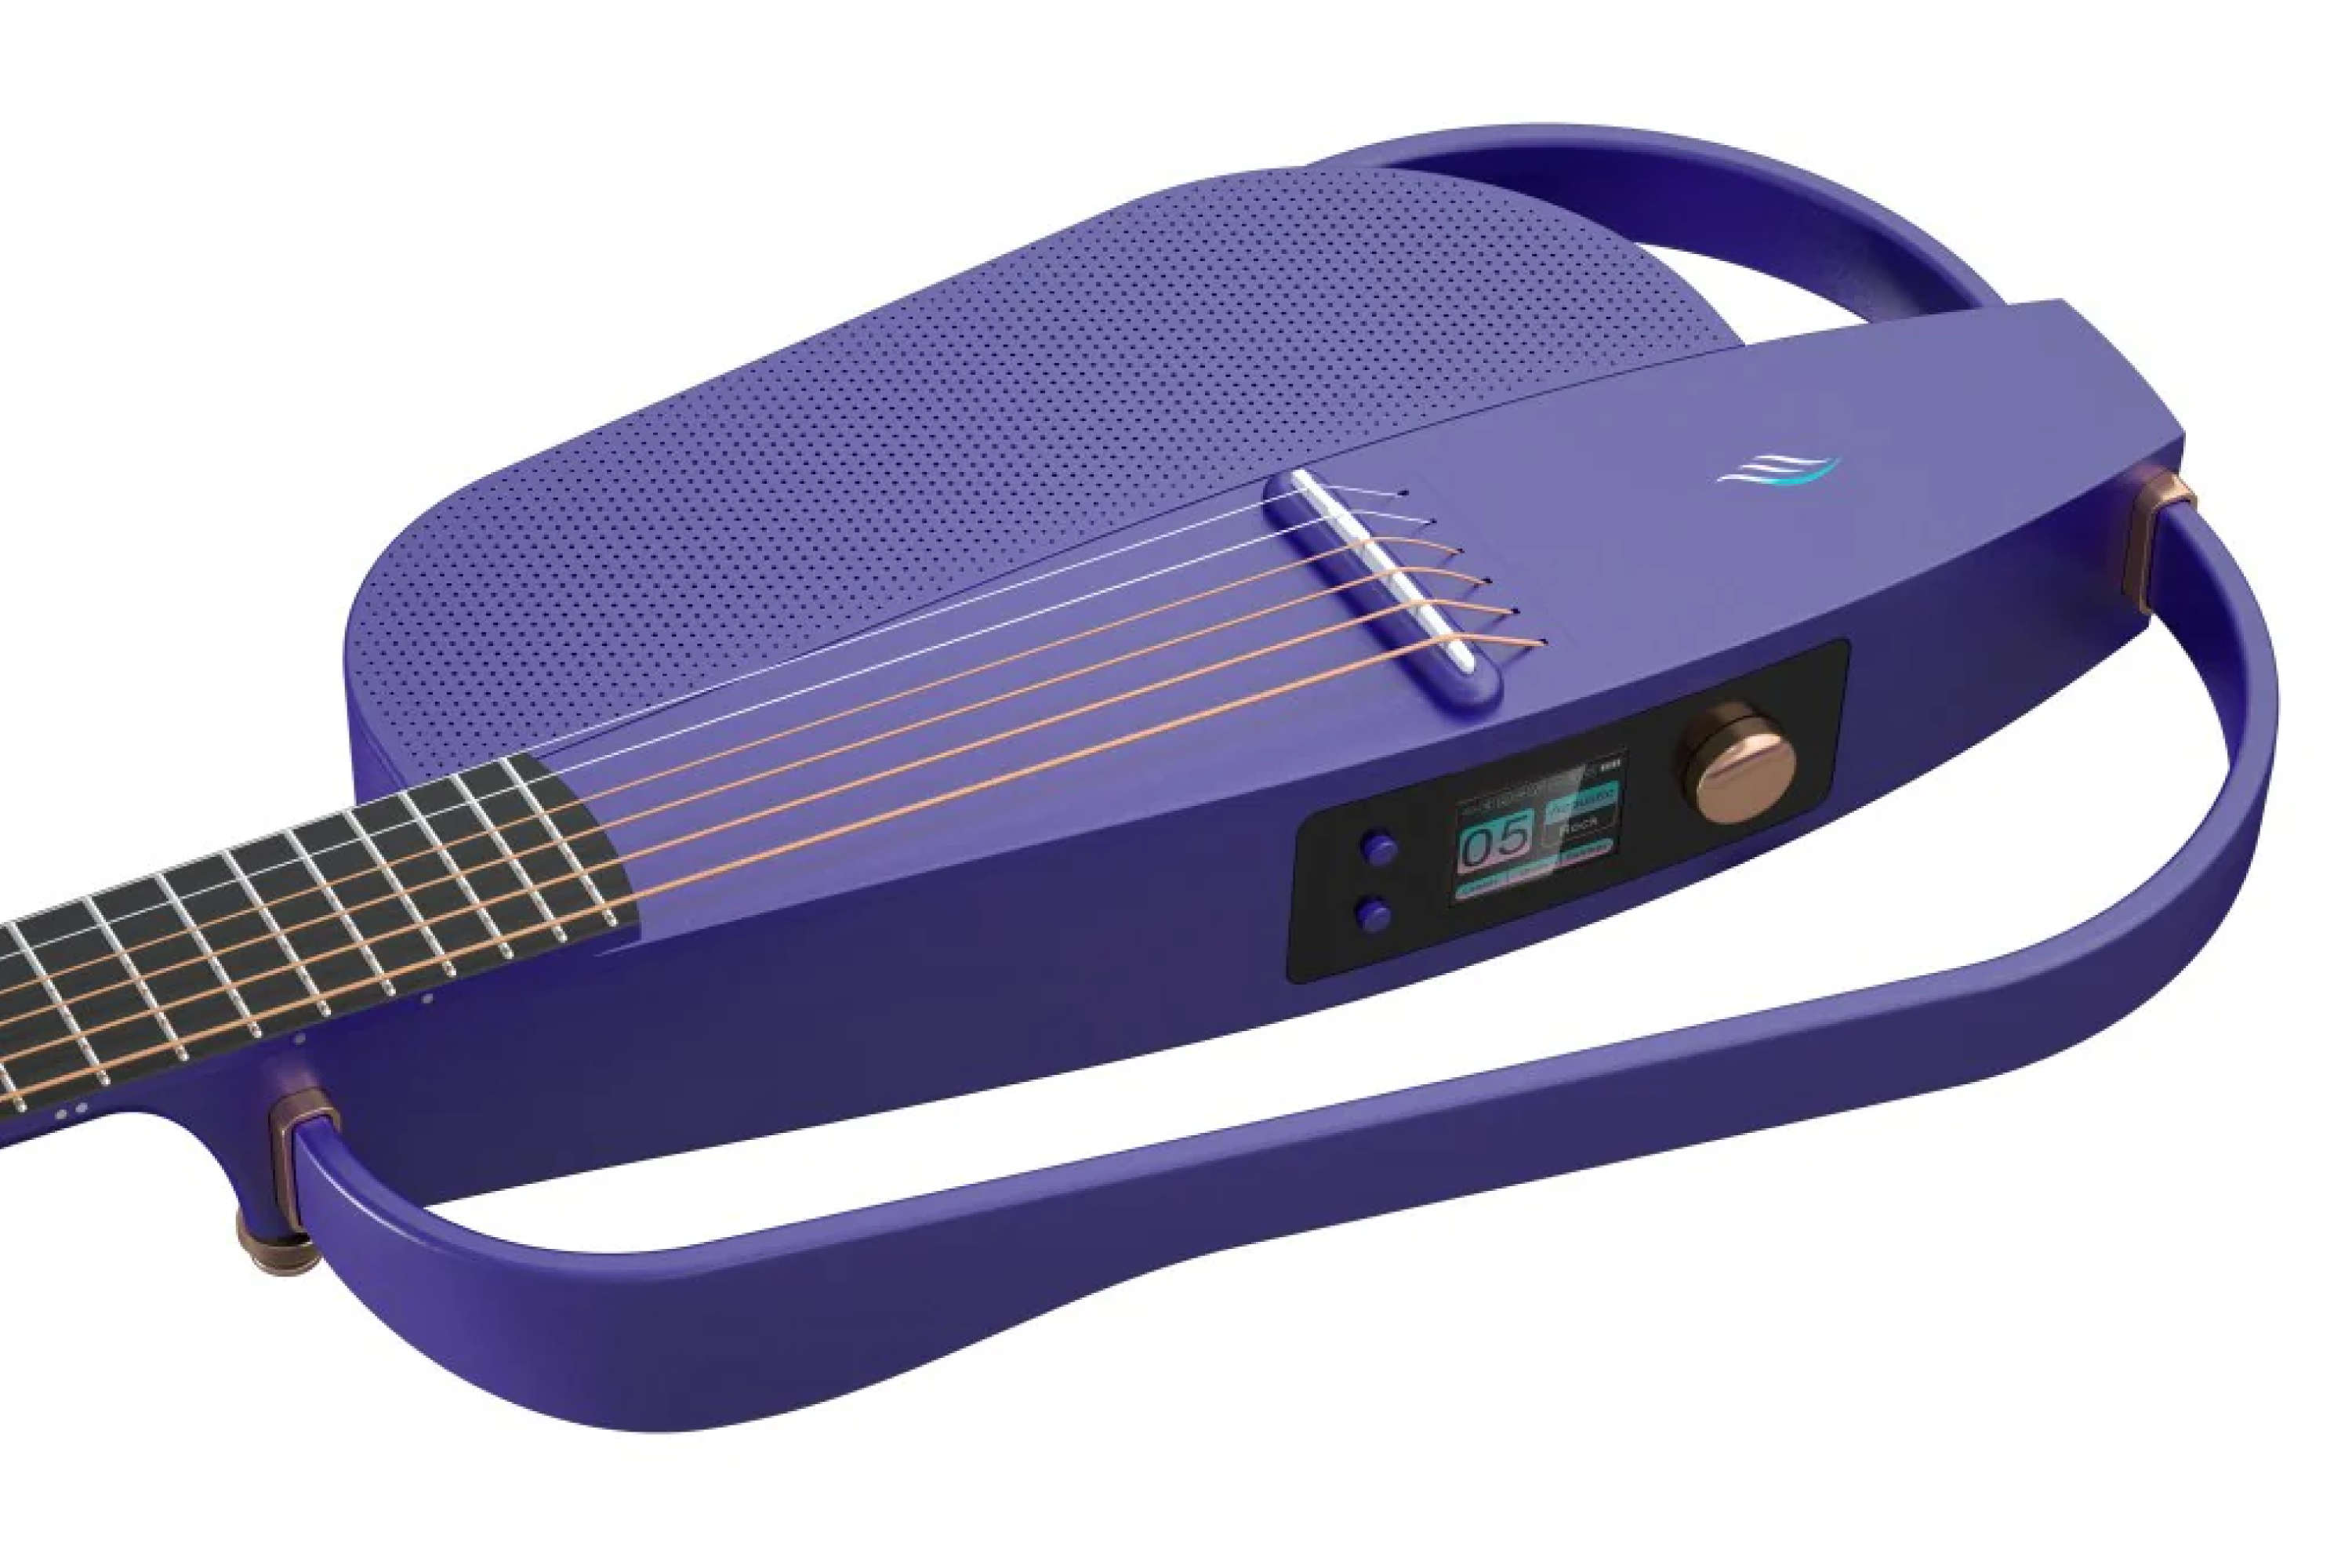 Enya NEXG 2 All-in-One Smart Audio Loop Guitar - Purple